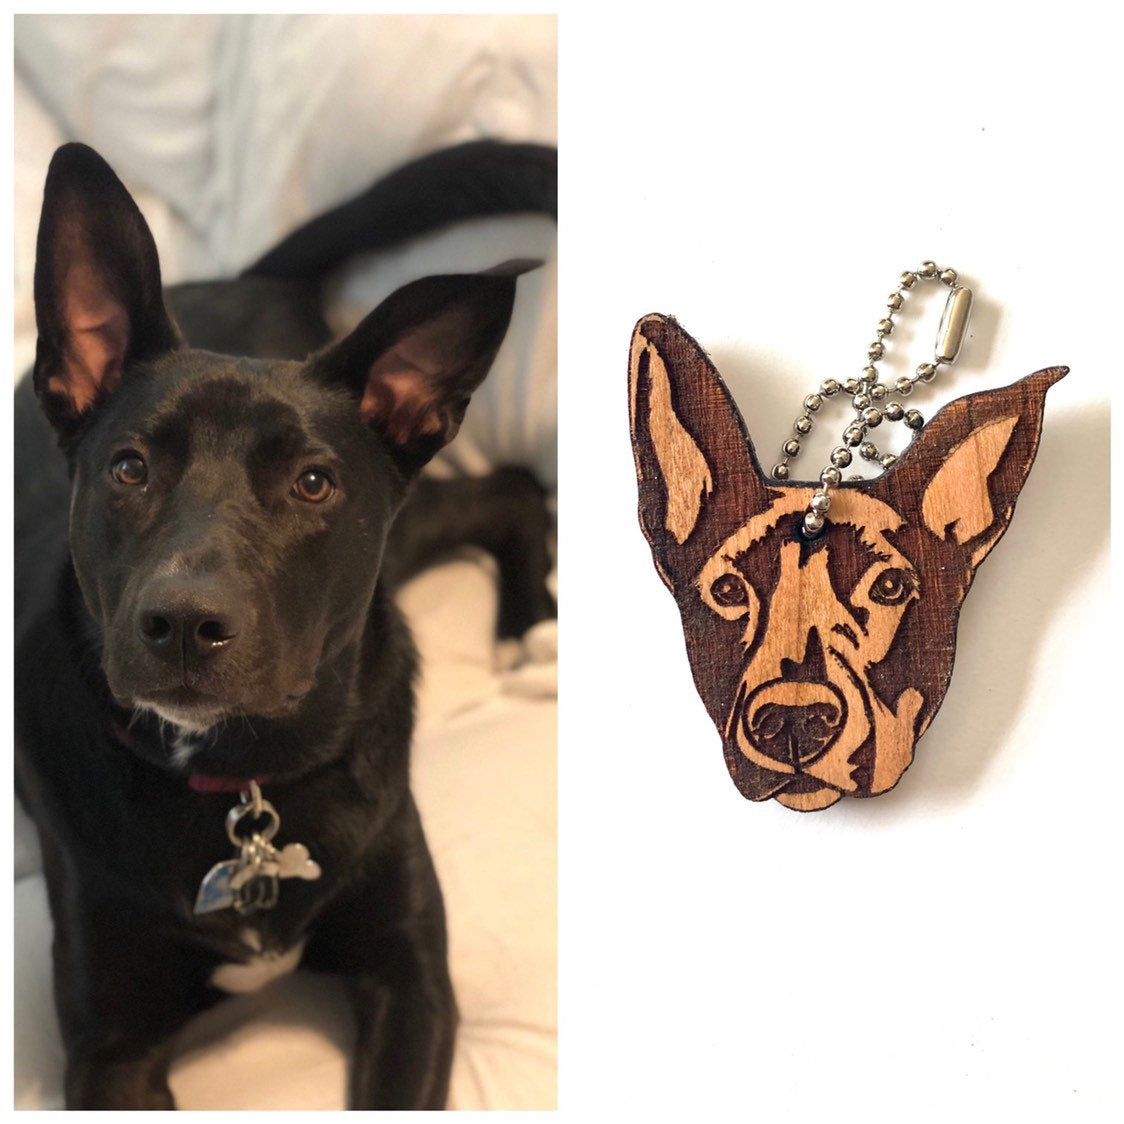 French Bulldog Gifts, French Dog Keychain